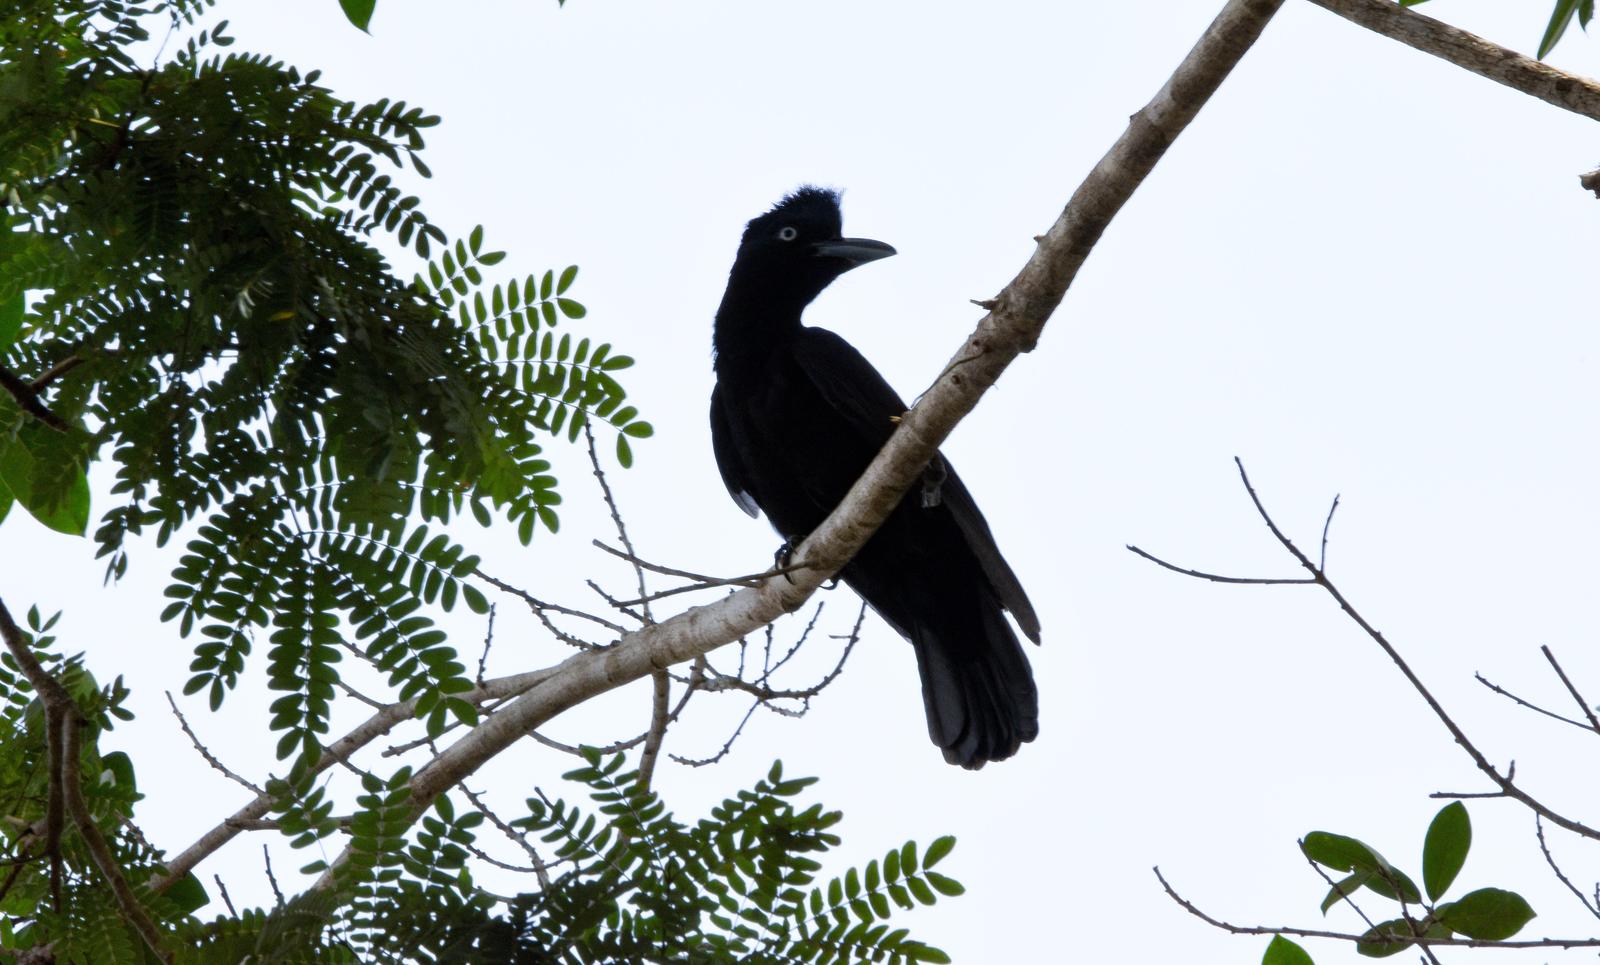 Amazonian Umbrellabird Photo by Julio Delgado